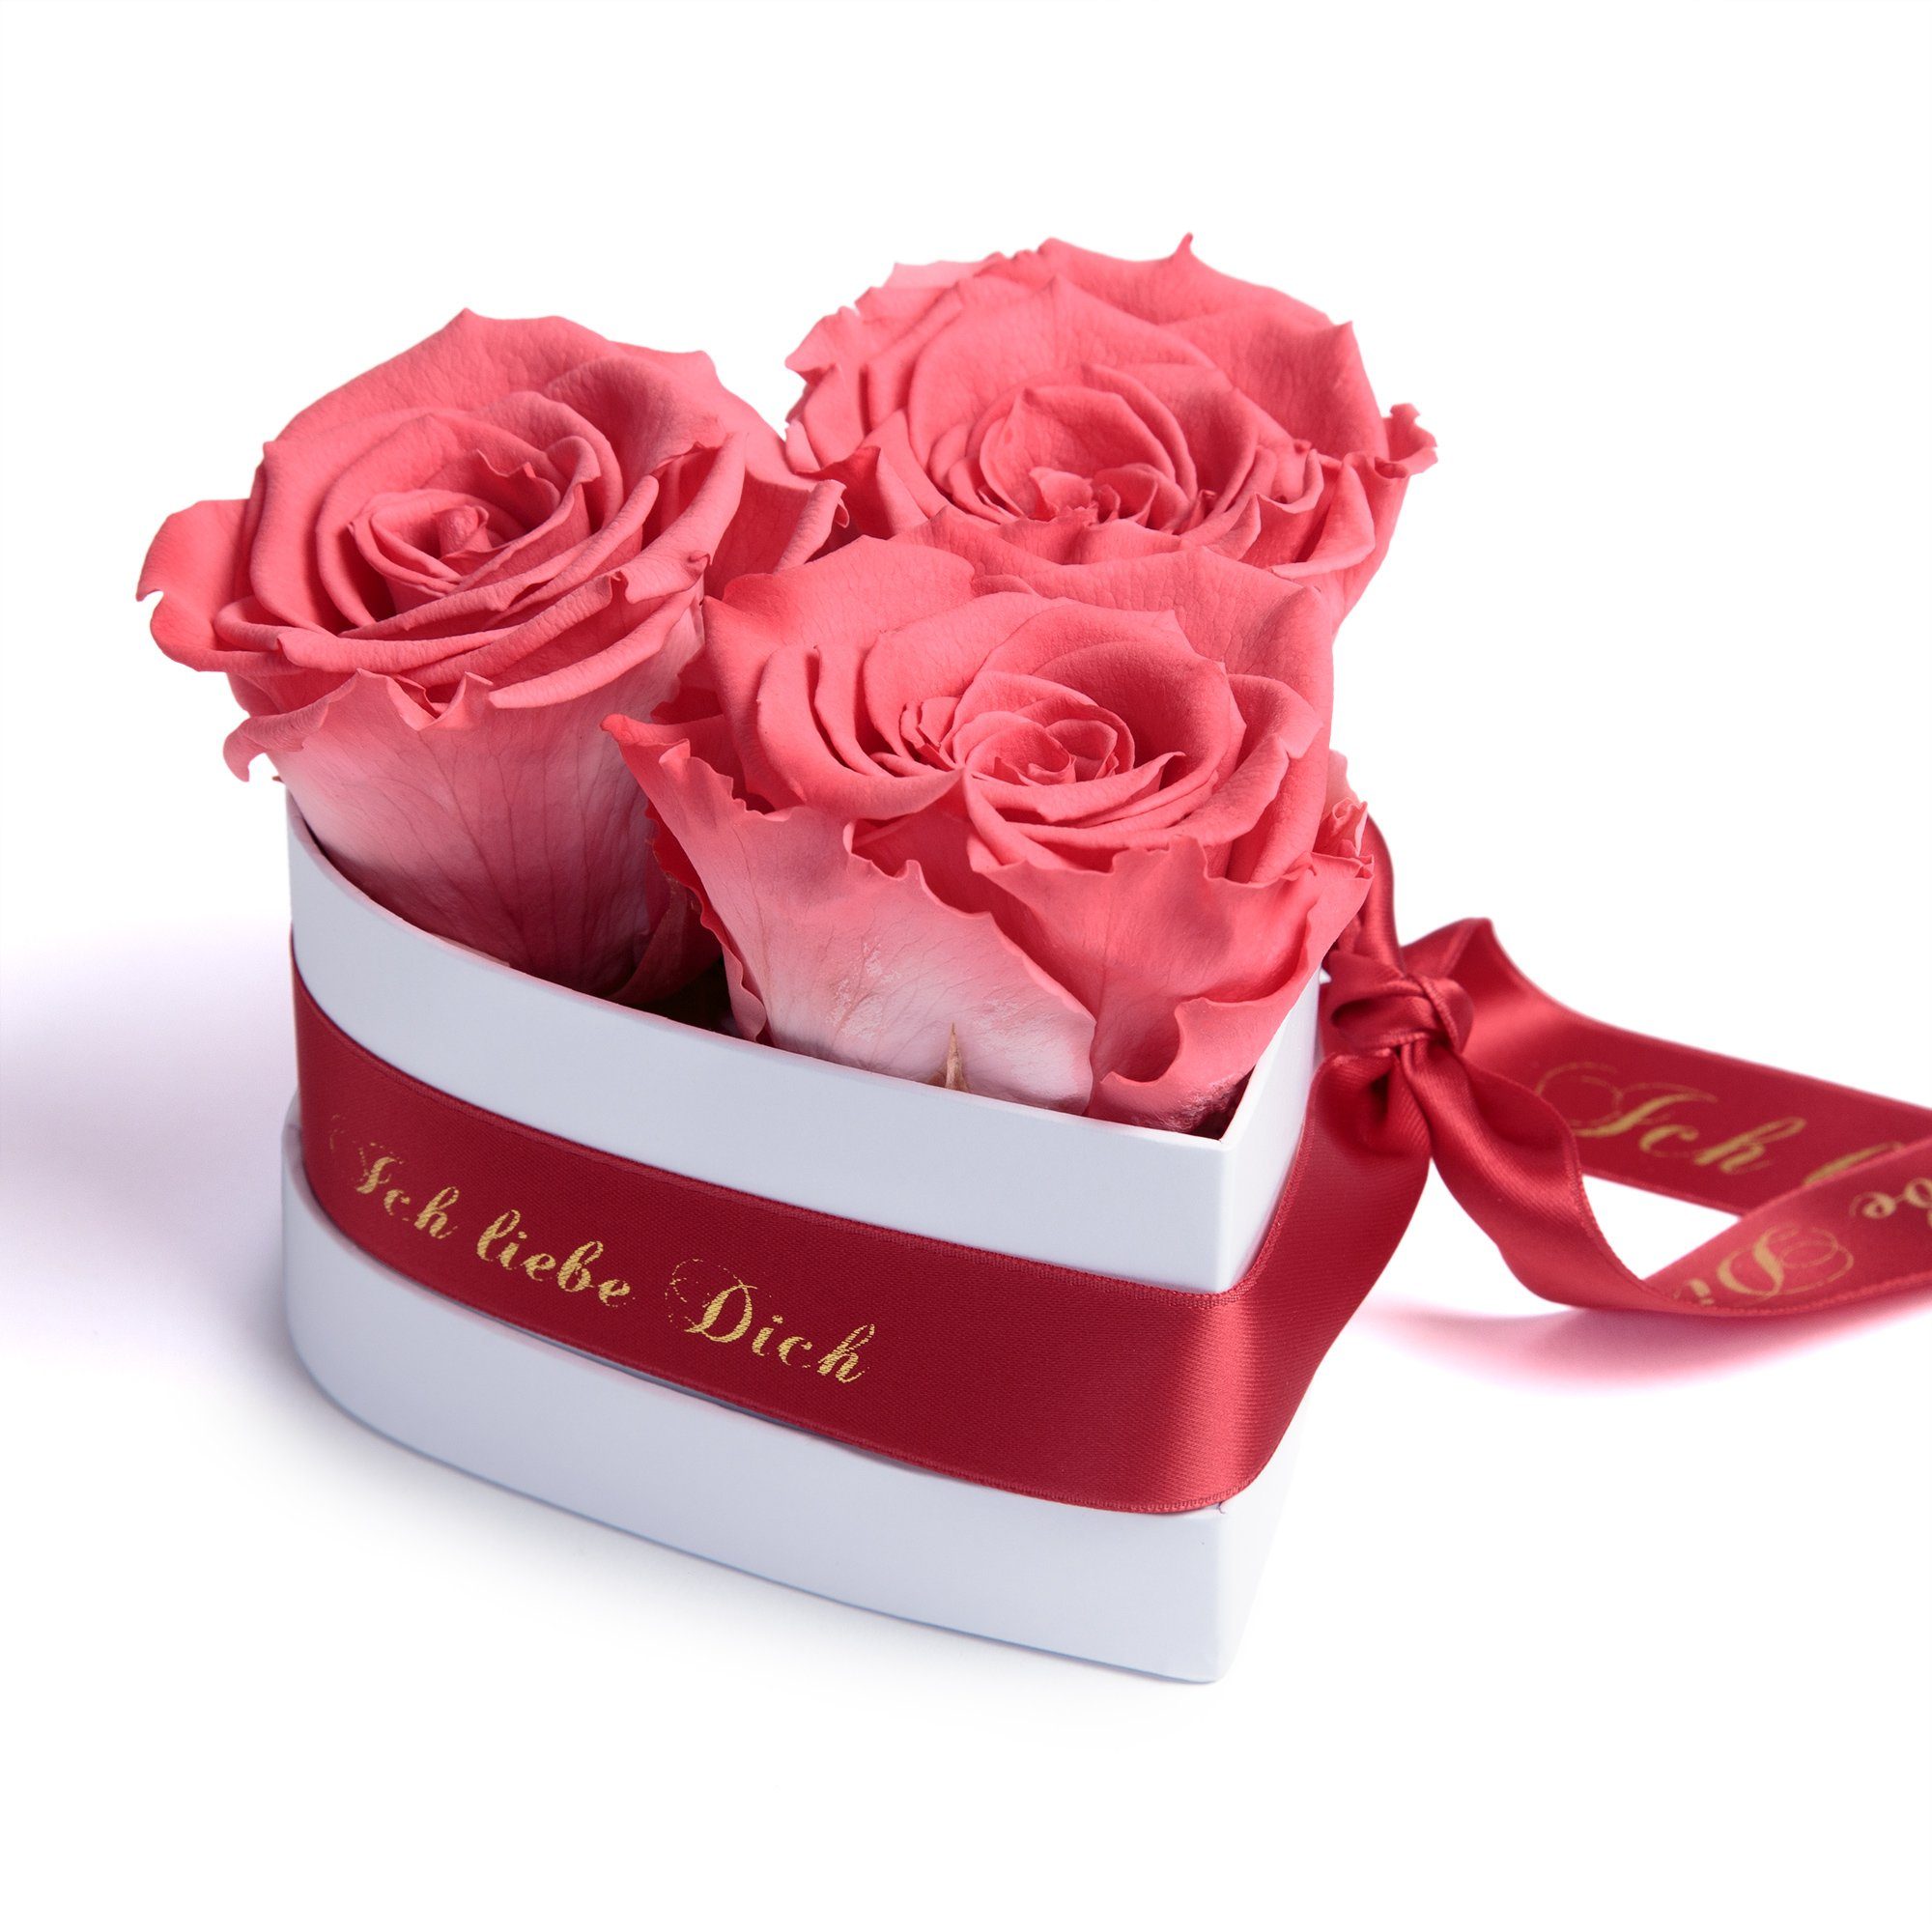 Kunstblume Rosenbox Herz 3 infinity Rosen Ich liebe Dich Geschenk für Sie Rose, ROSEMARIE SCHULZ Heidelberg, Höhe 10 cm, Liebesbeweis Valentinstag korall-rot | Kunstblumen